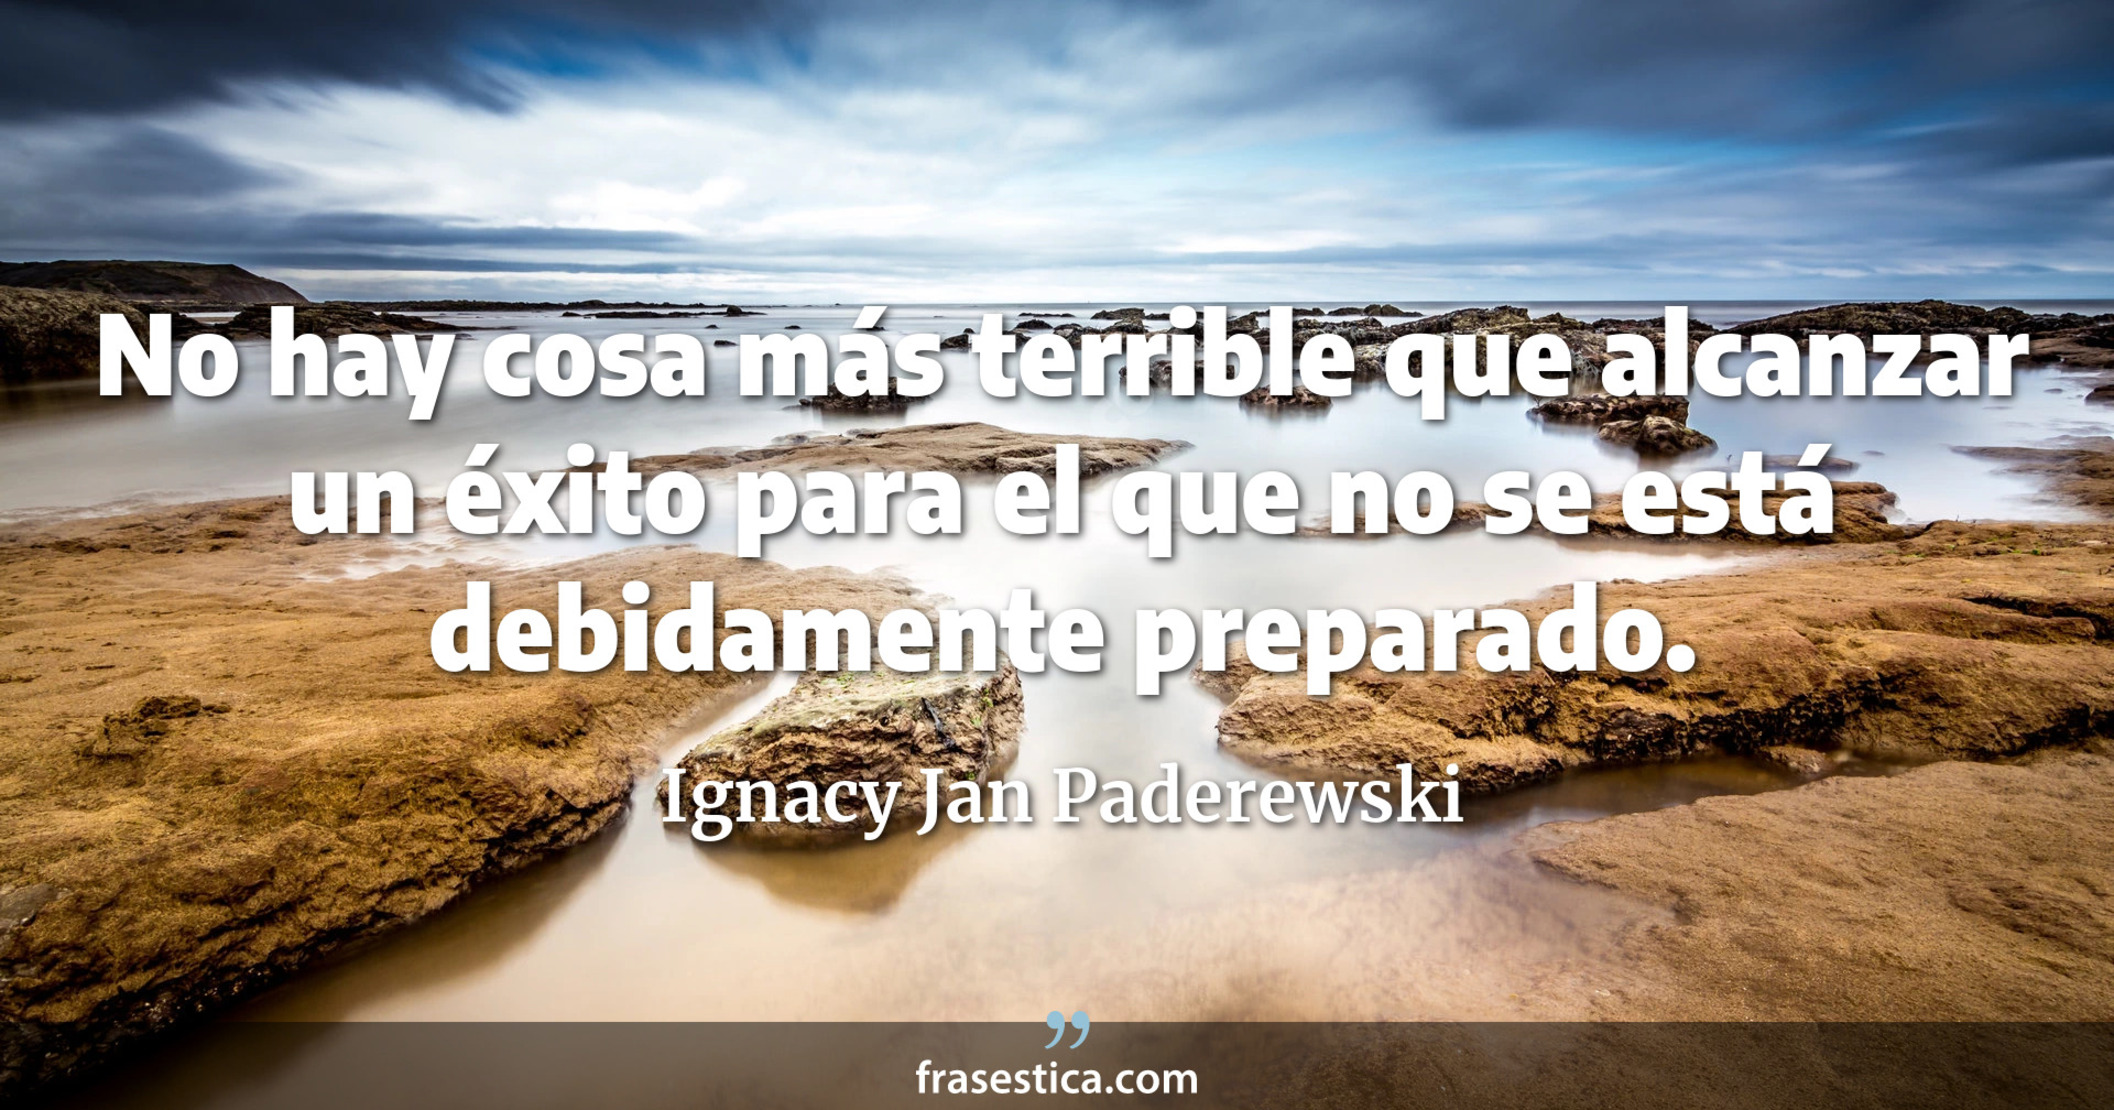 No hay cosa más terrible que alcanzar un éxito para el que no se está debidamente preparado. - Ignacy Jan Paderewski